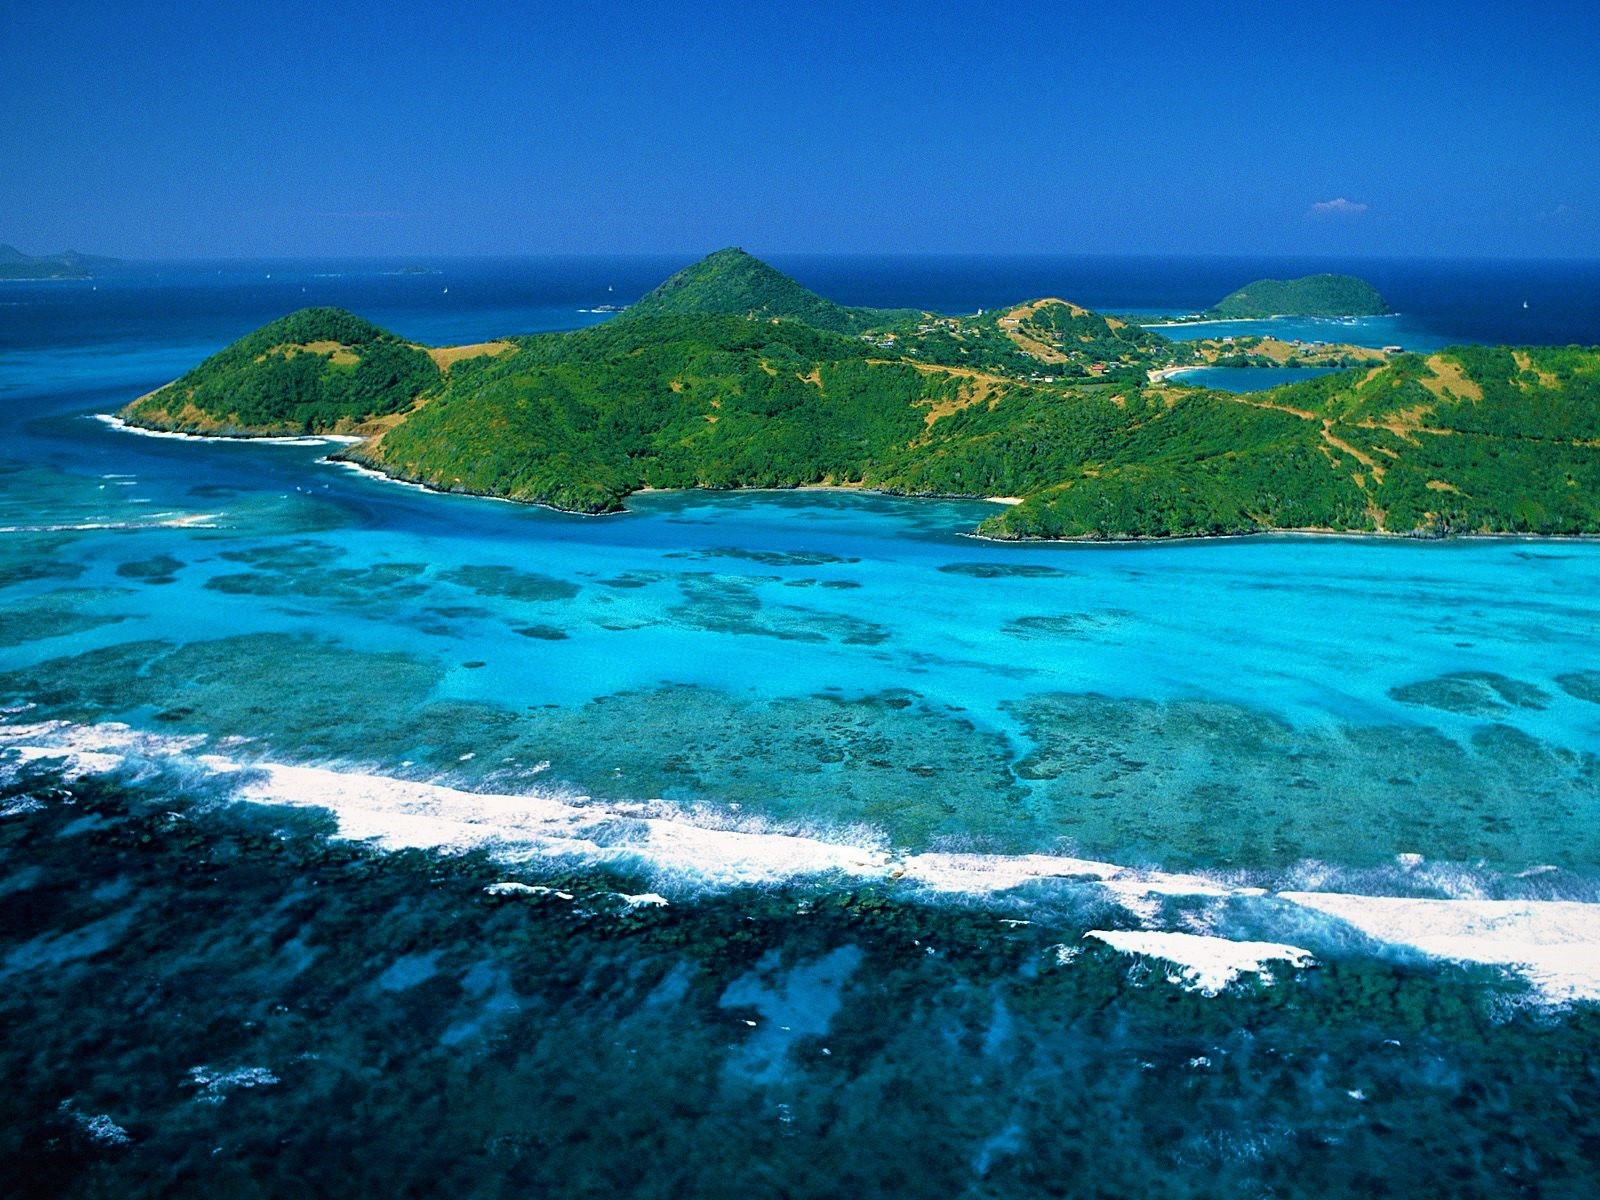 Скачать обои Антильские Острова на телефон бесплатно